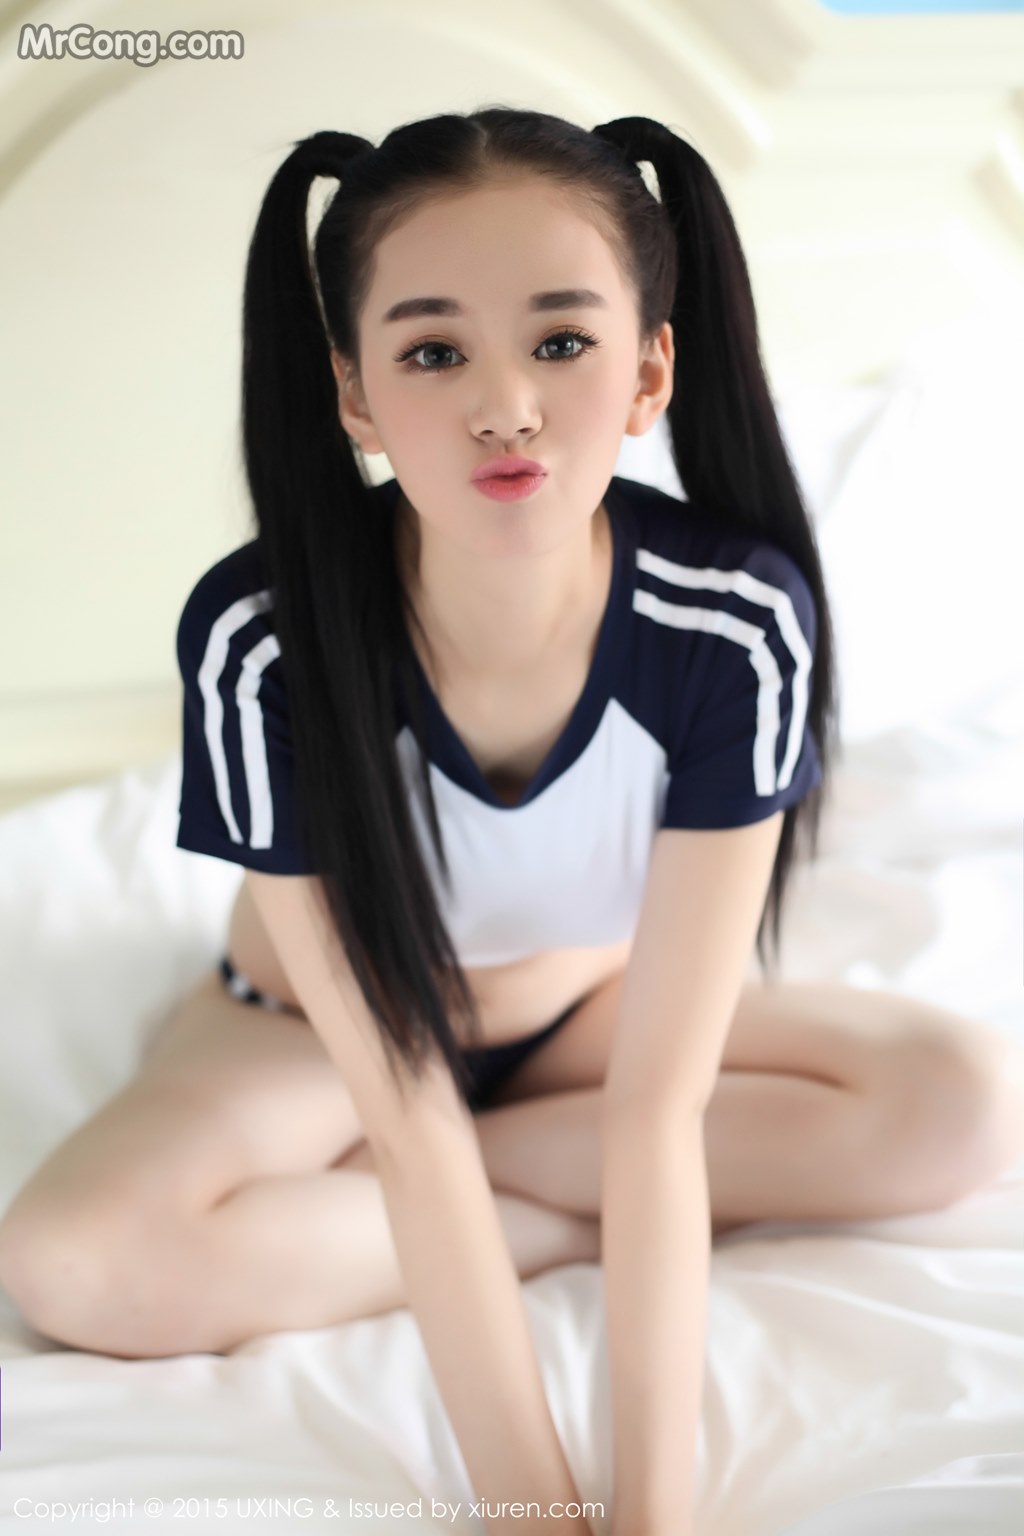 UXING Vol.027: Model Wen Xin Baby (温馨 baby) (45 pictures)